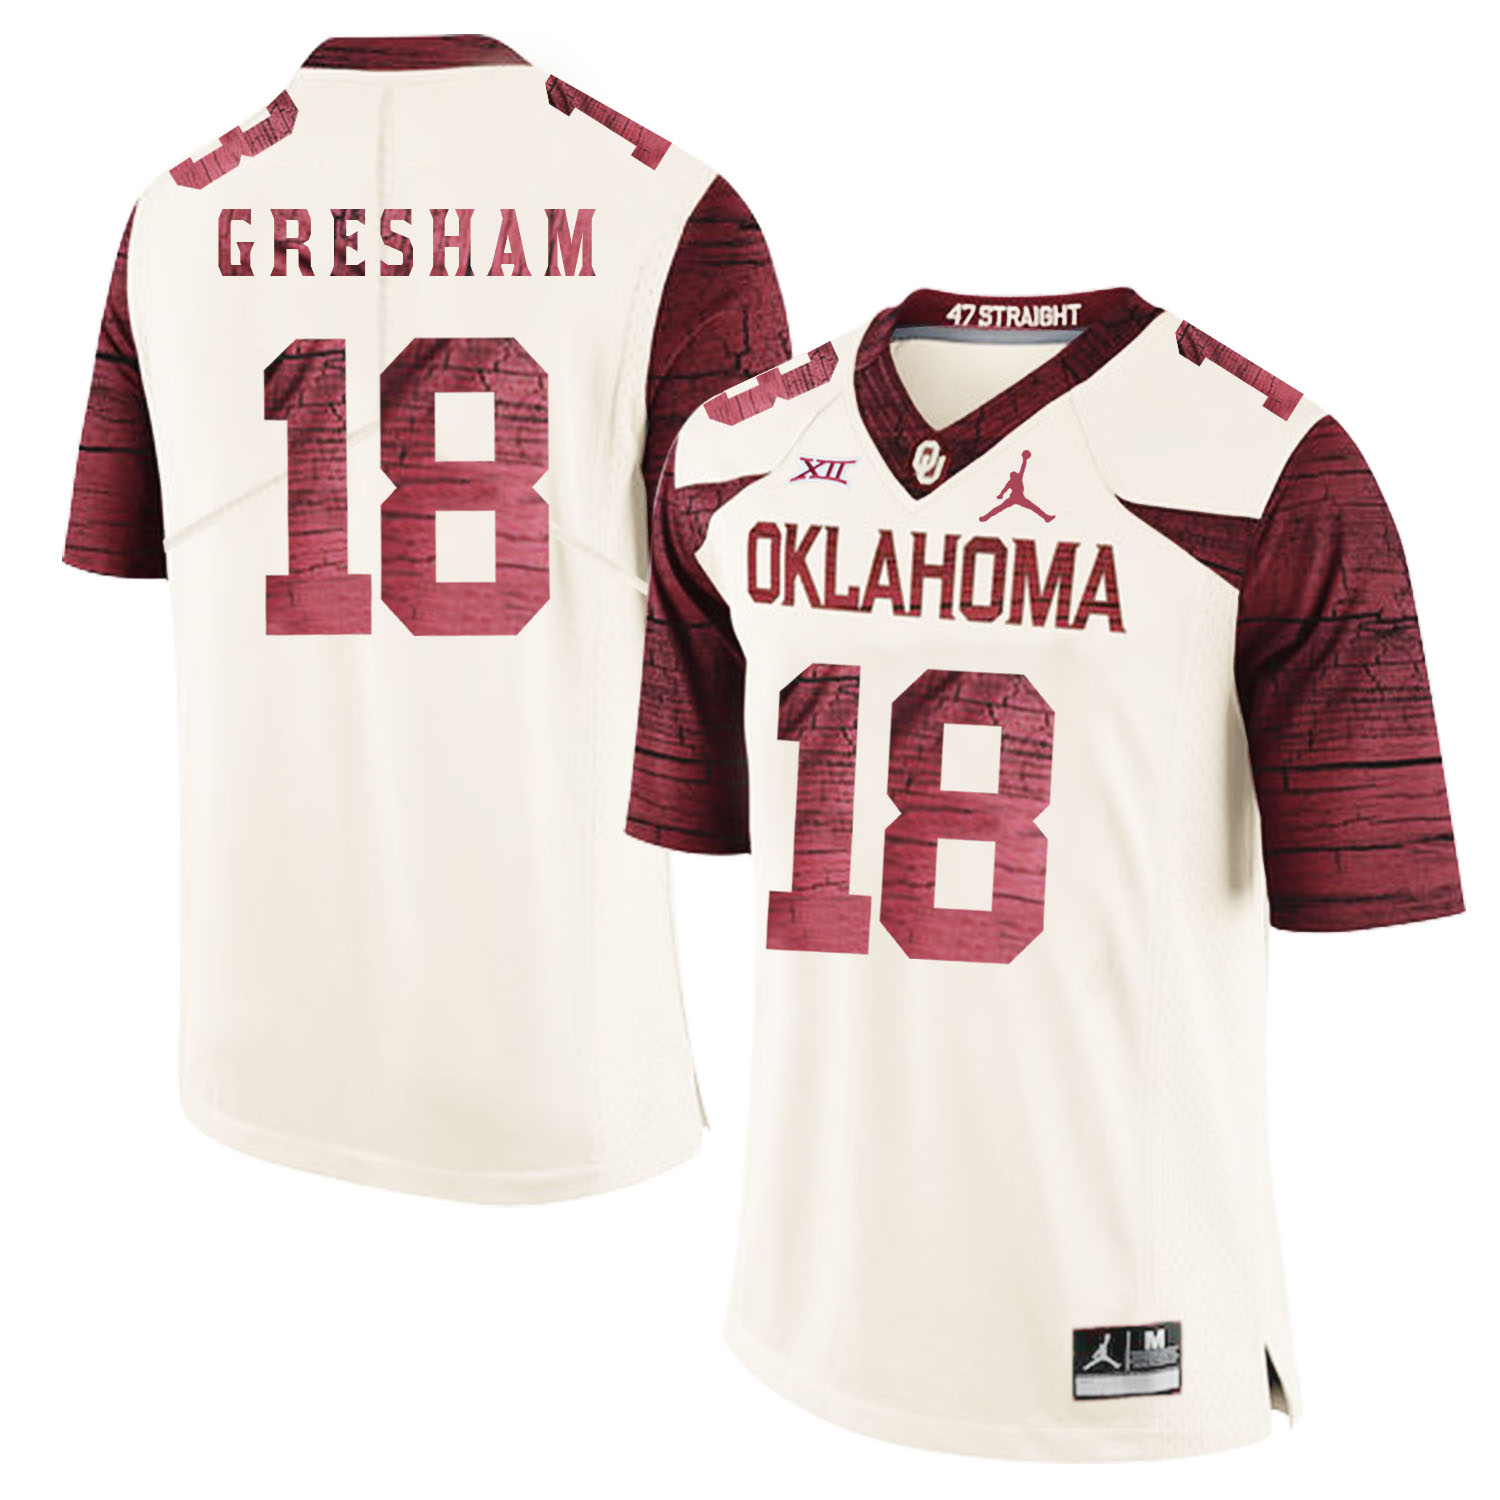 Oklahoma Sooners 18 Jermaine Gresham White 47 Game Winning Streak College Football Jersey - Click Image to Close